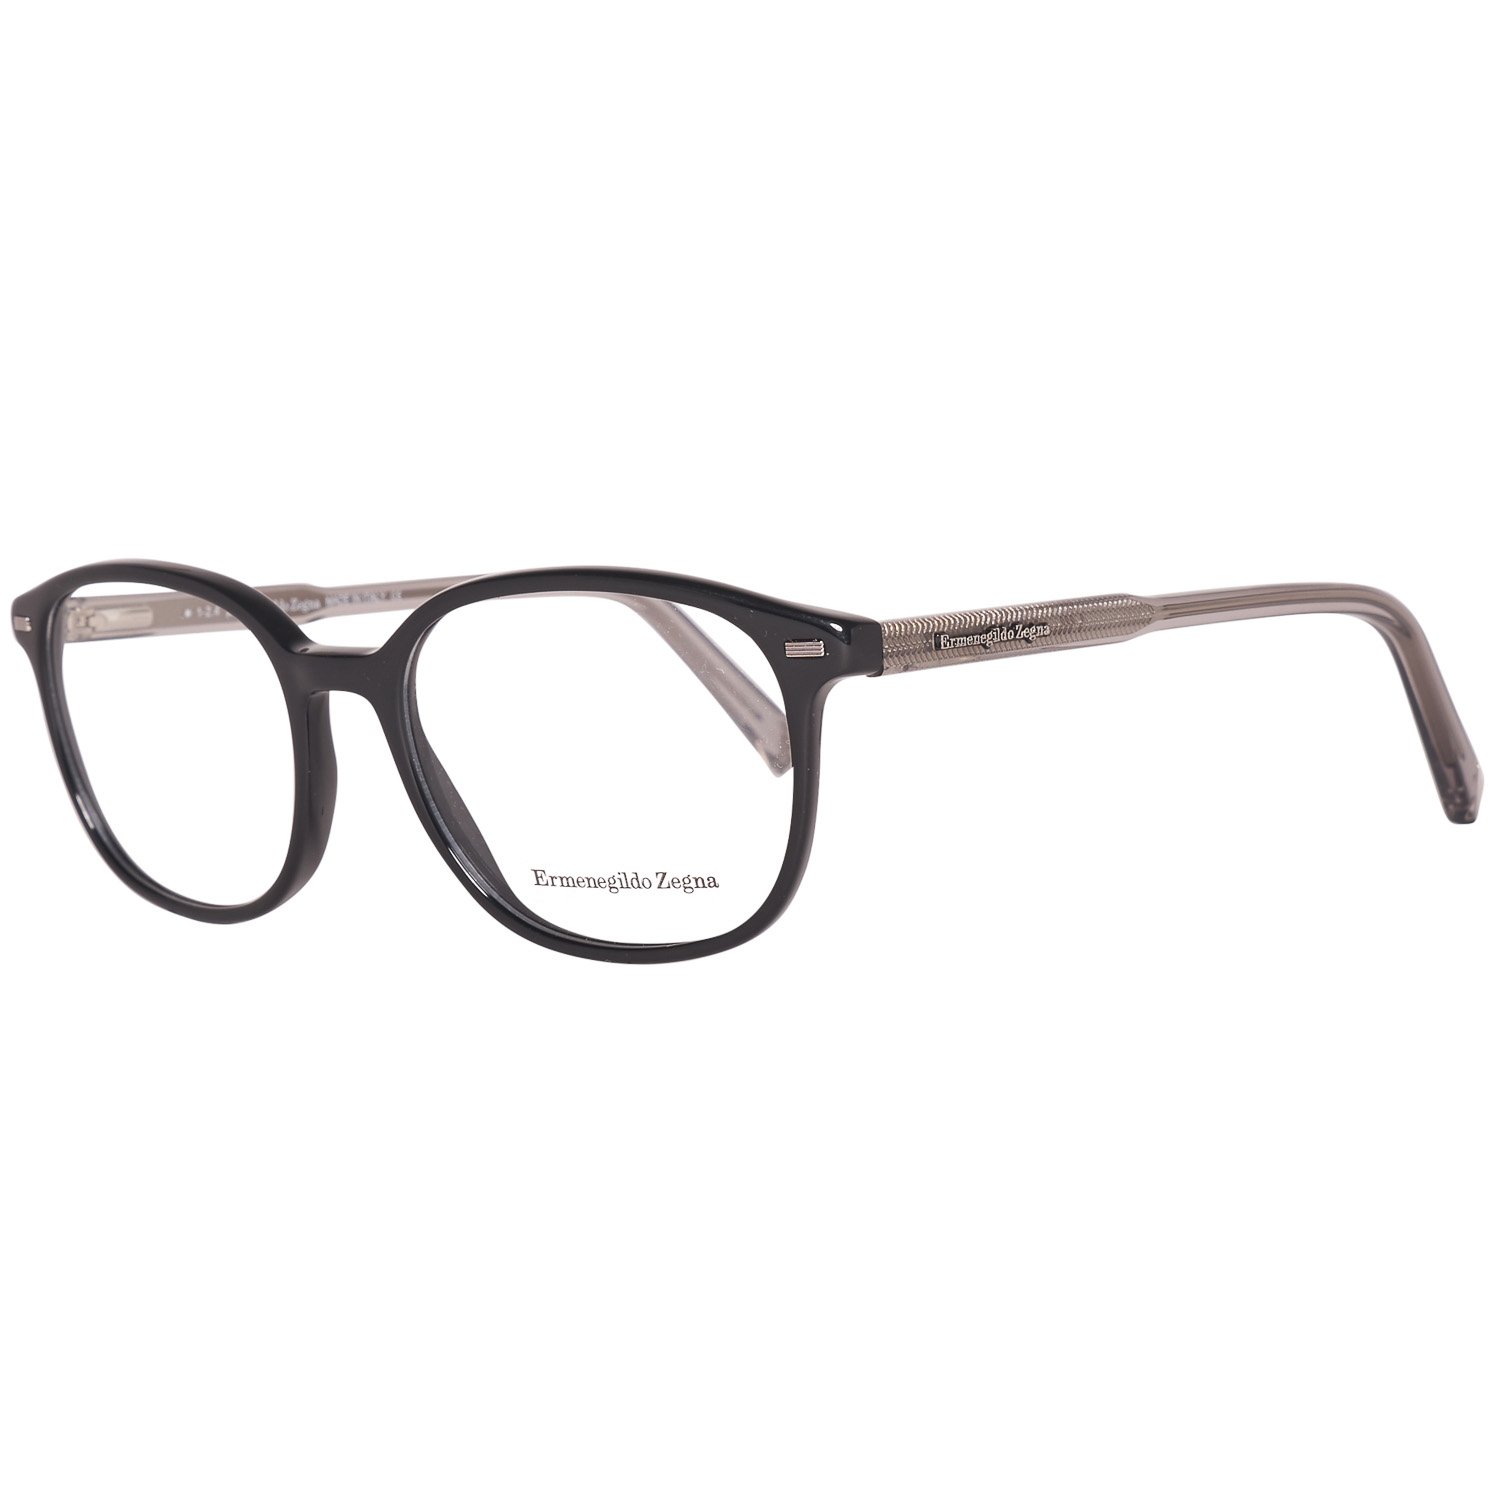 Ermenegildo Zegna Men's Optical Frames Eyewear Black EZ5007 51001